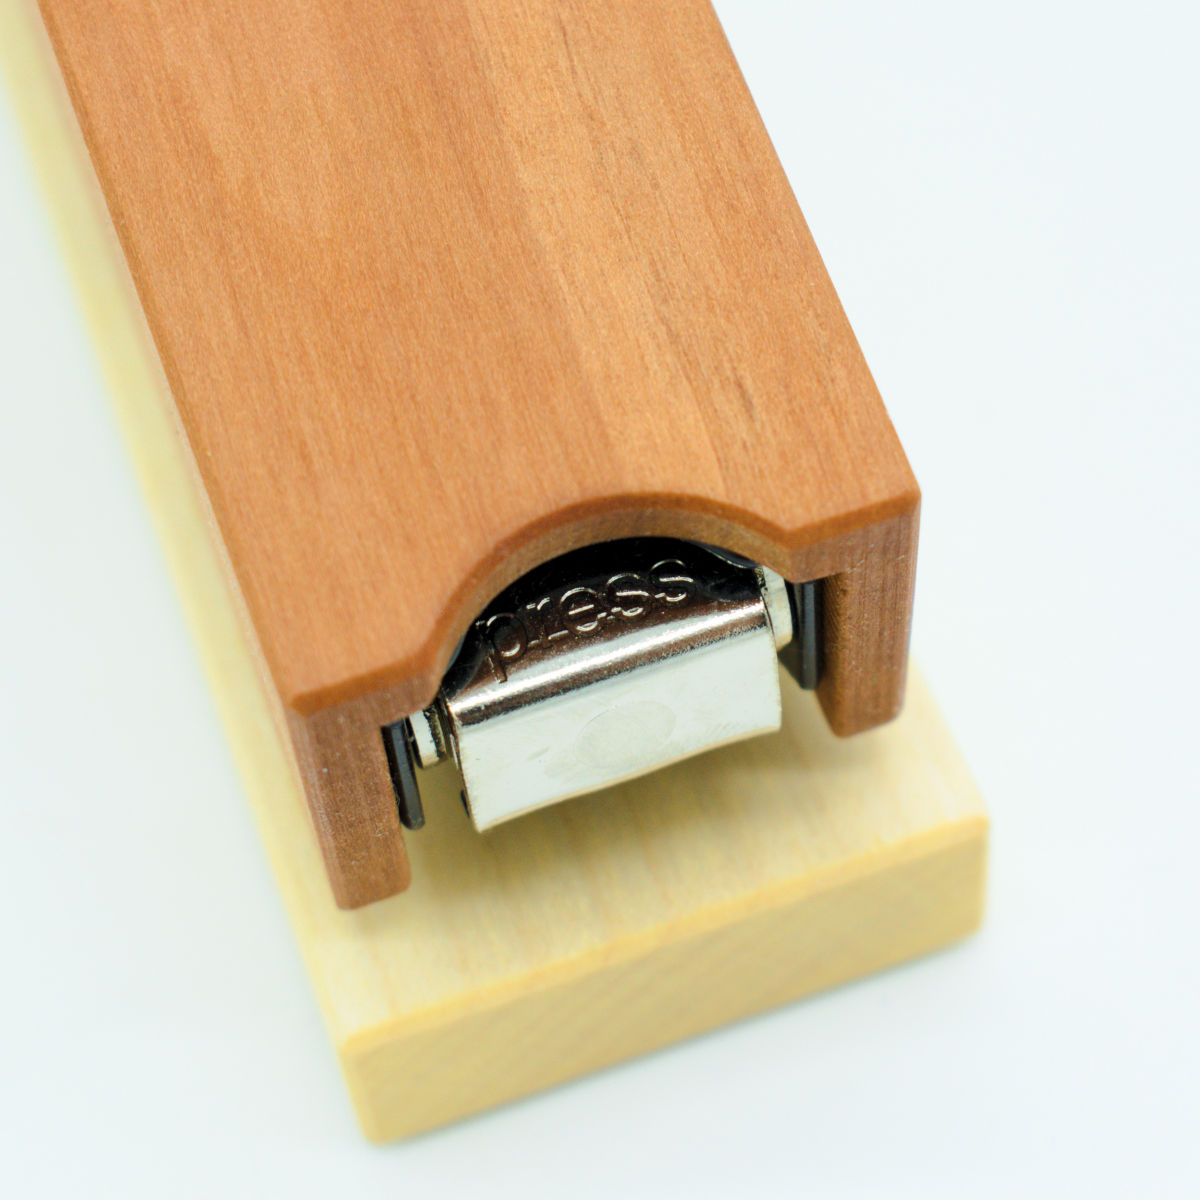 Hefter aus Holz in verschiedenen Variationen - 'Stapler'